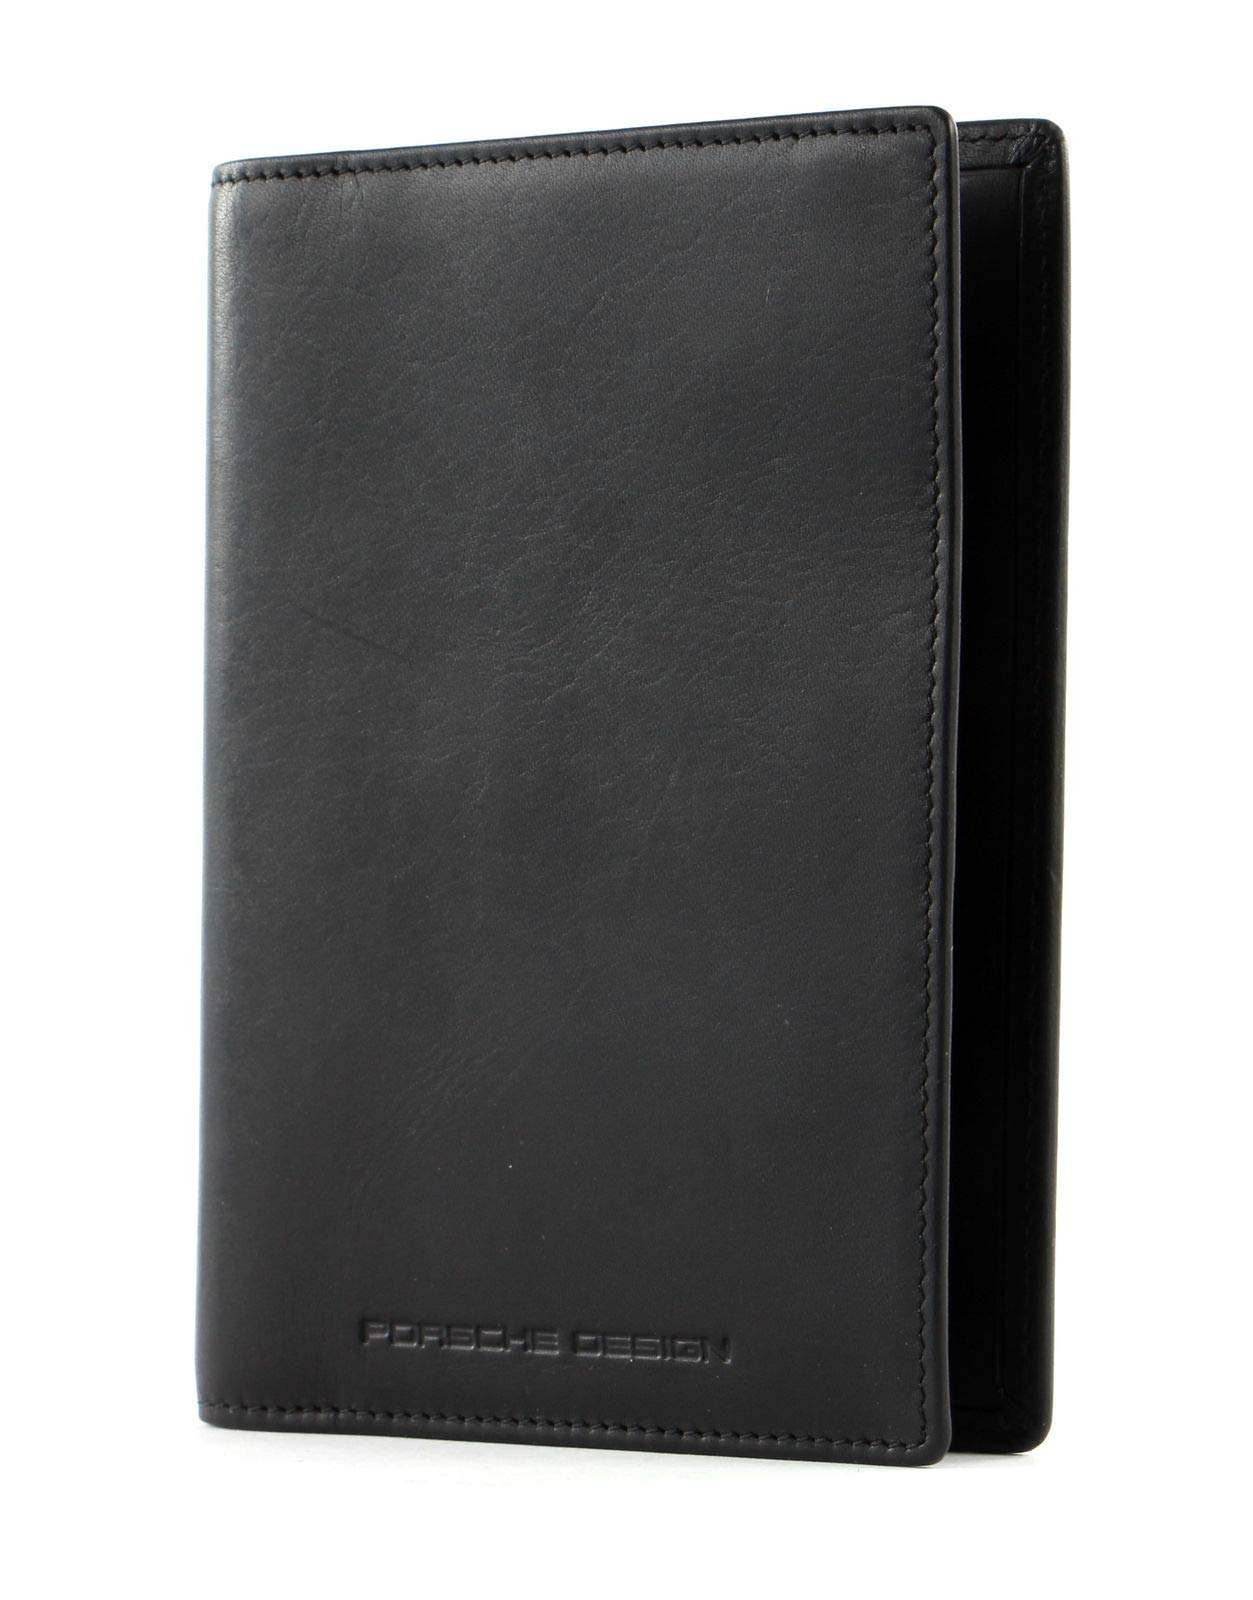 Porsche Design Urban Courier Passport Holder Black